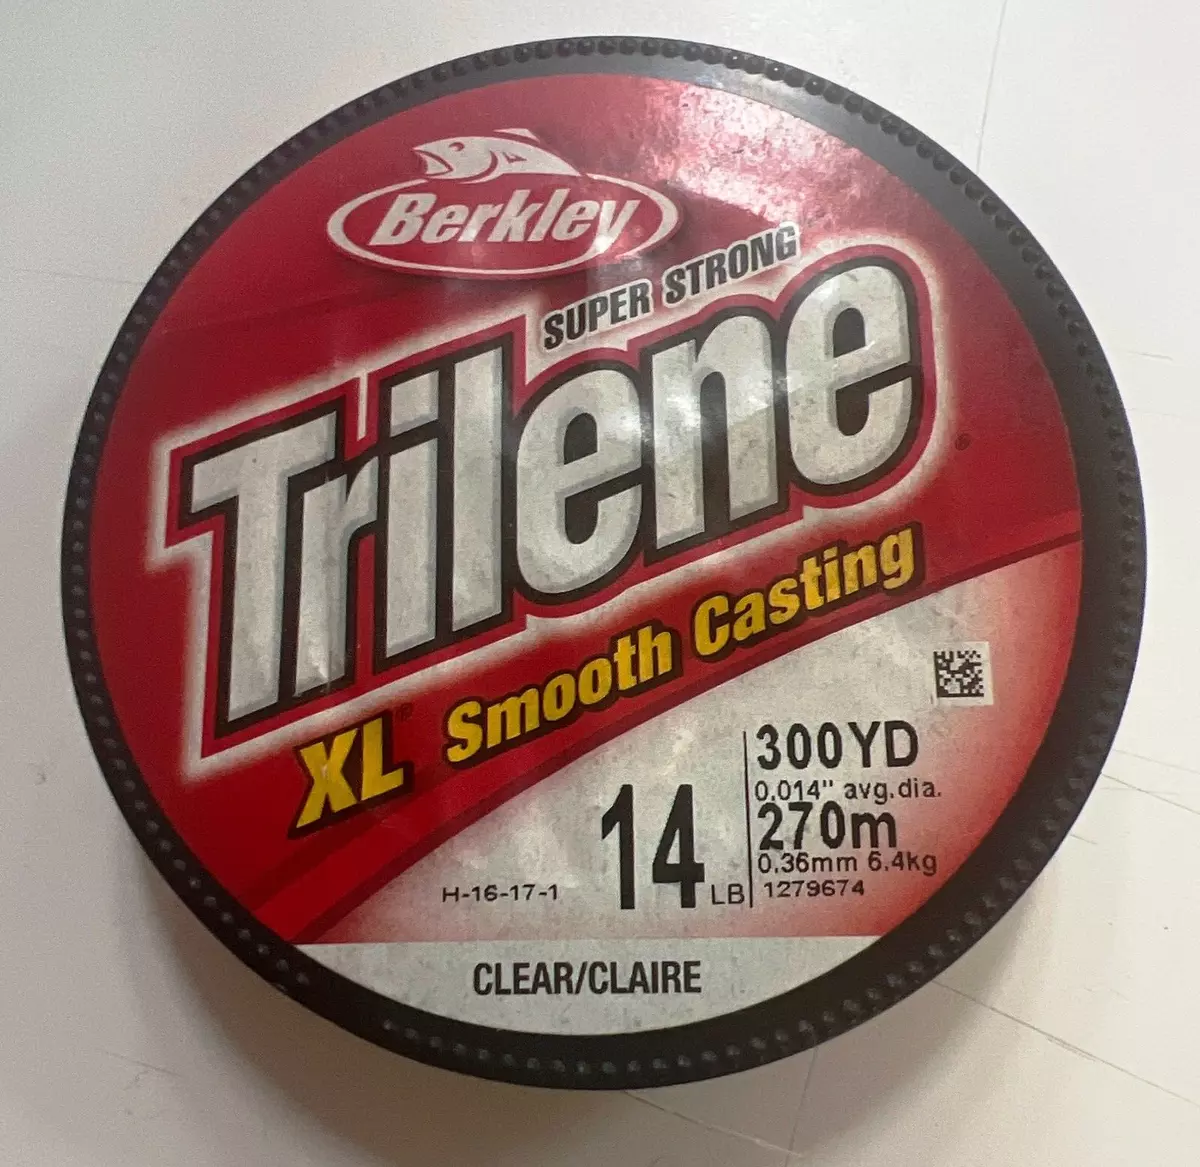 Berkley Trilene XL Smooth Casting fishing line 14lb CLEAR 300 yards